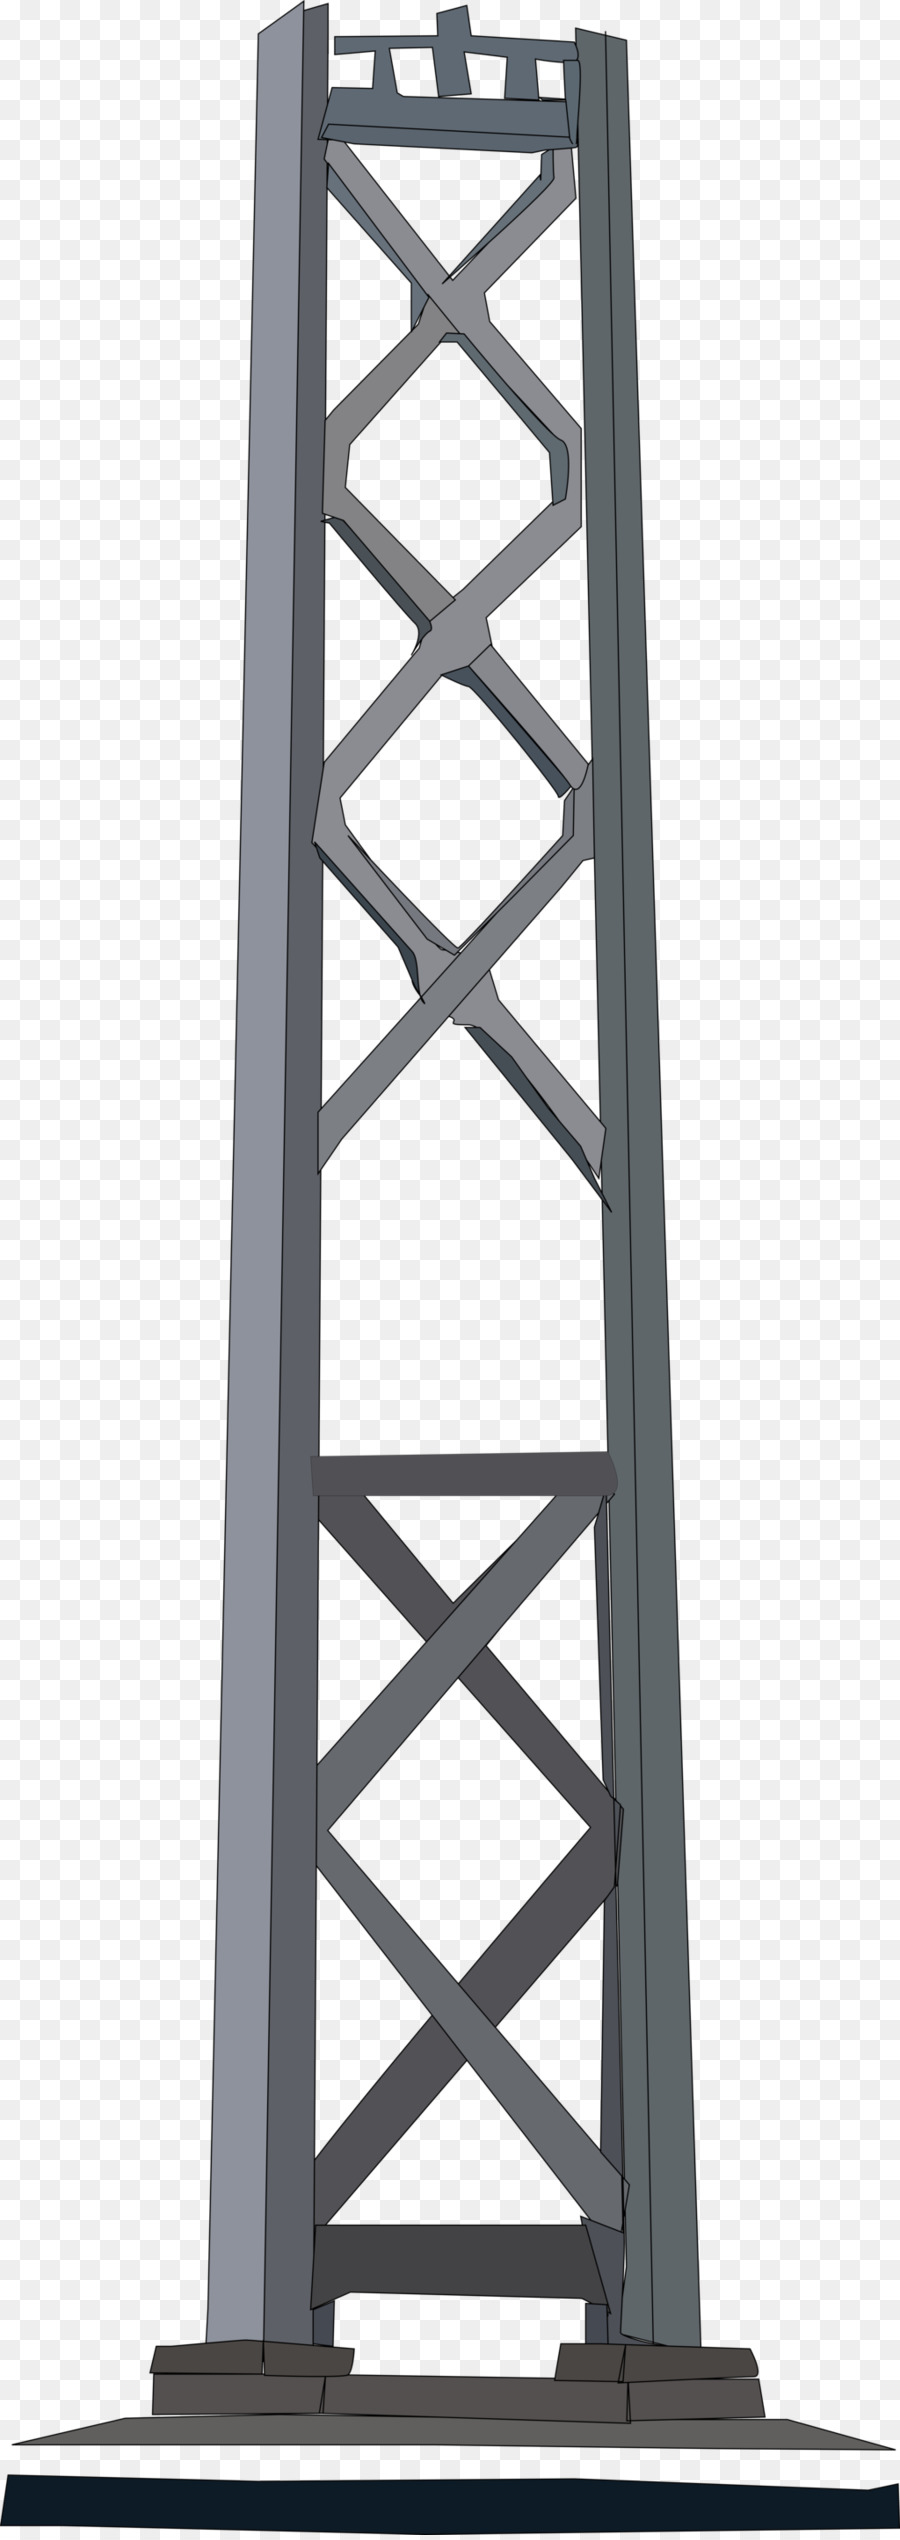 L'Isola del tesoro, il Golden Gate Bridge di San Francisco Maritime National Historical Park North Beach di San Francisco cable car system - il tower bridge